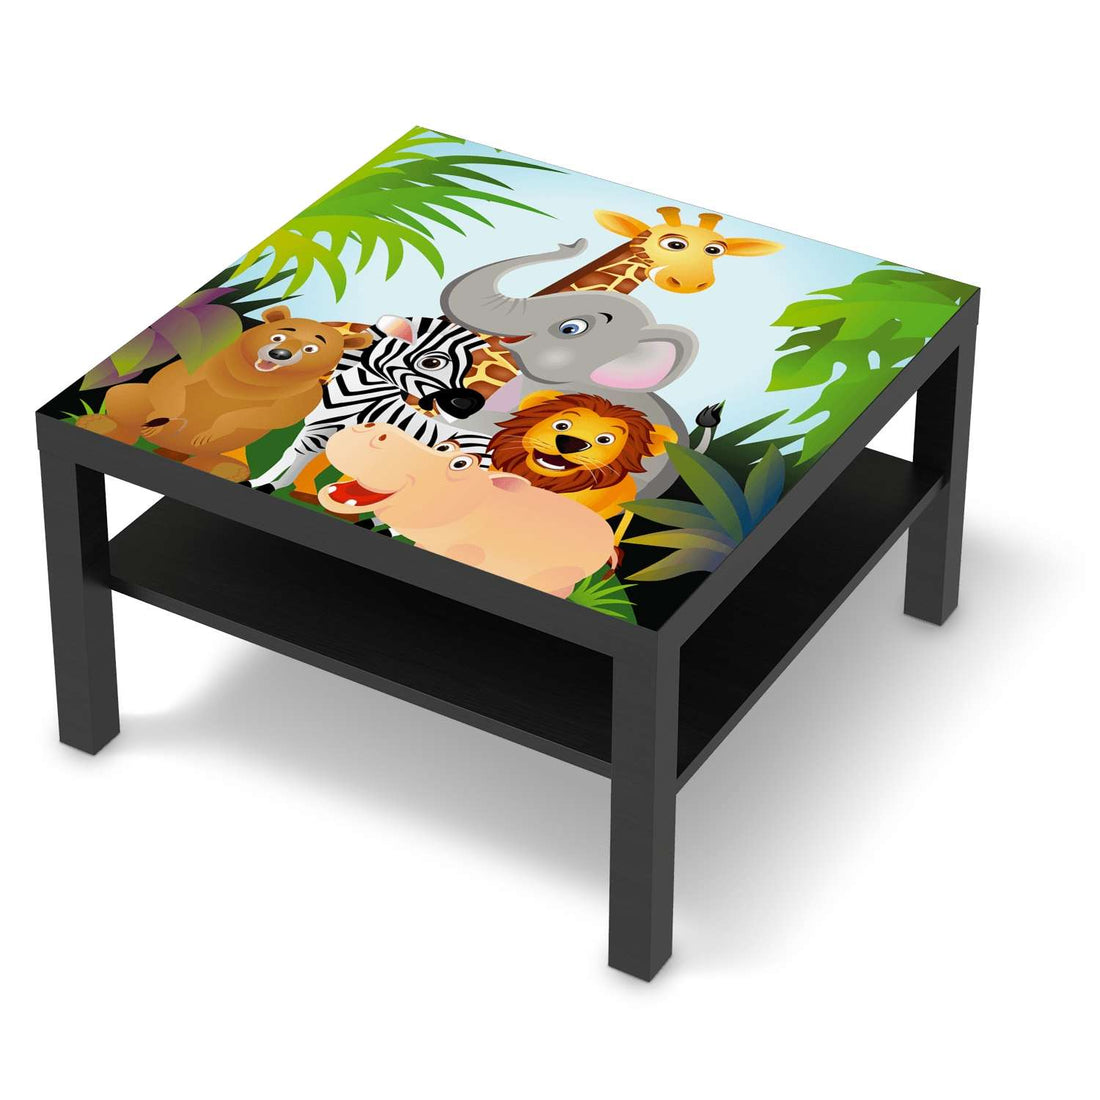 Selbstklebende Folie Wild Animals - IKEA Lack Tisch 78x78 cm - schwarz